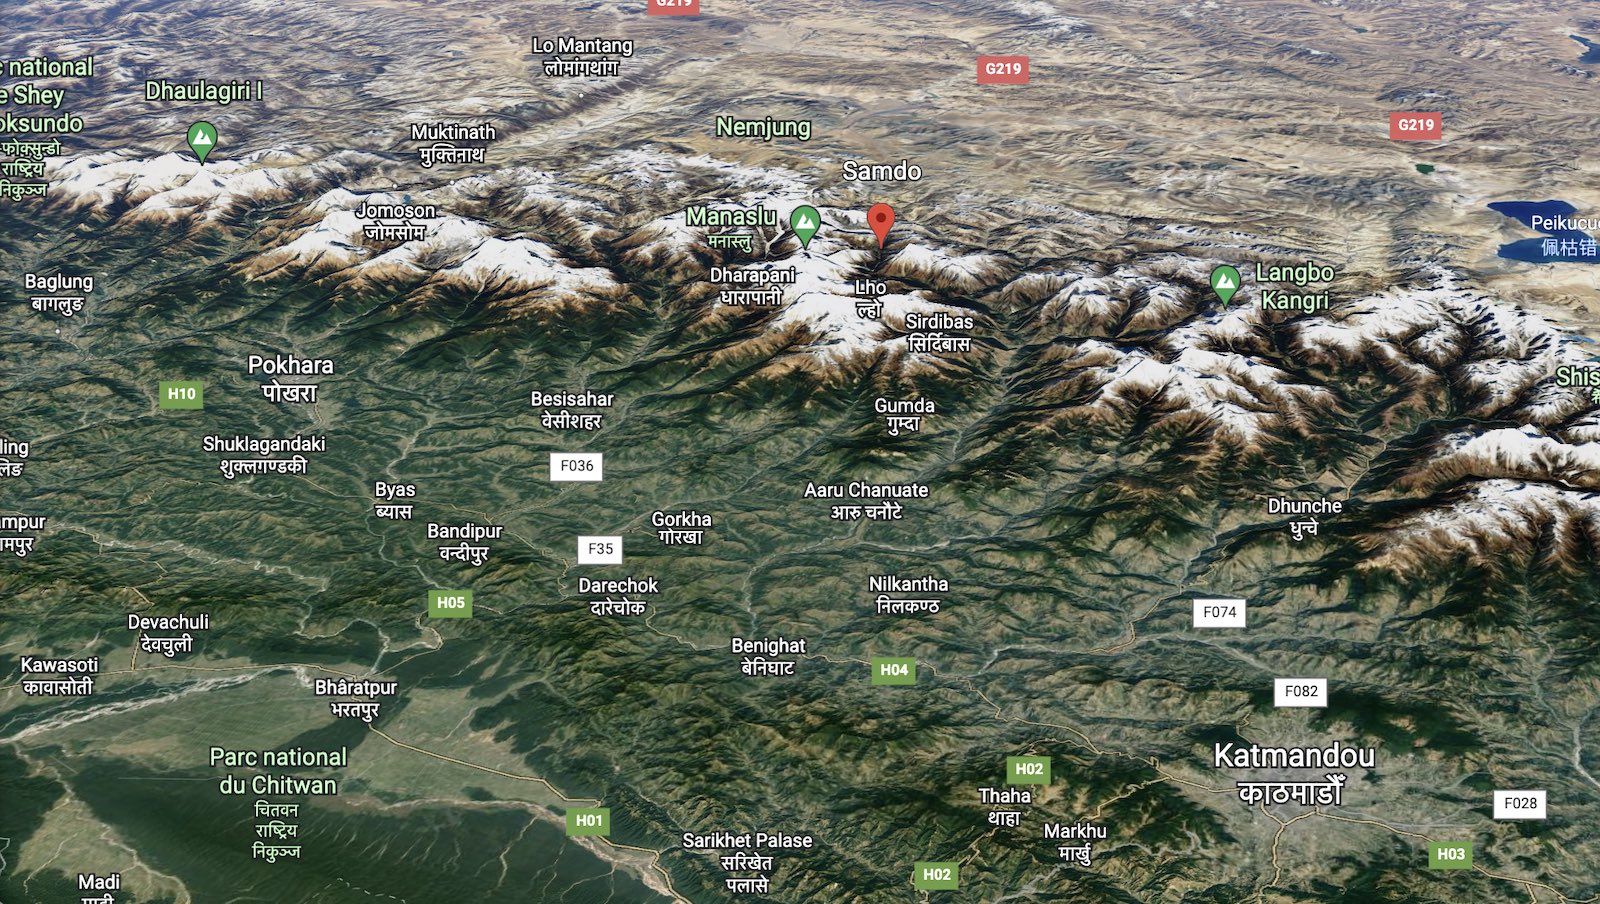 Samdo Google Earth Samdo Manaslu Katmandou